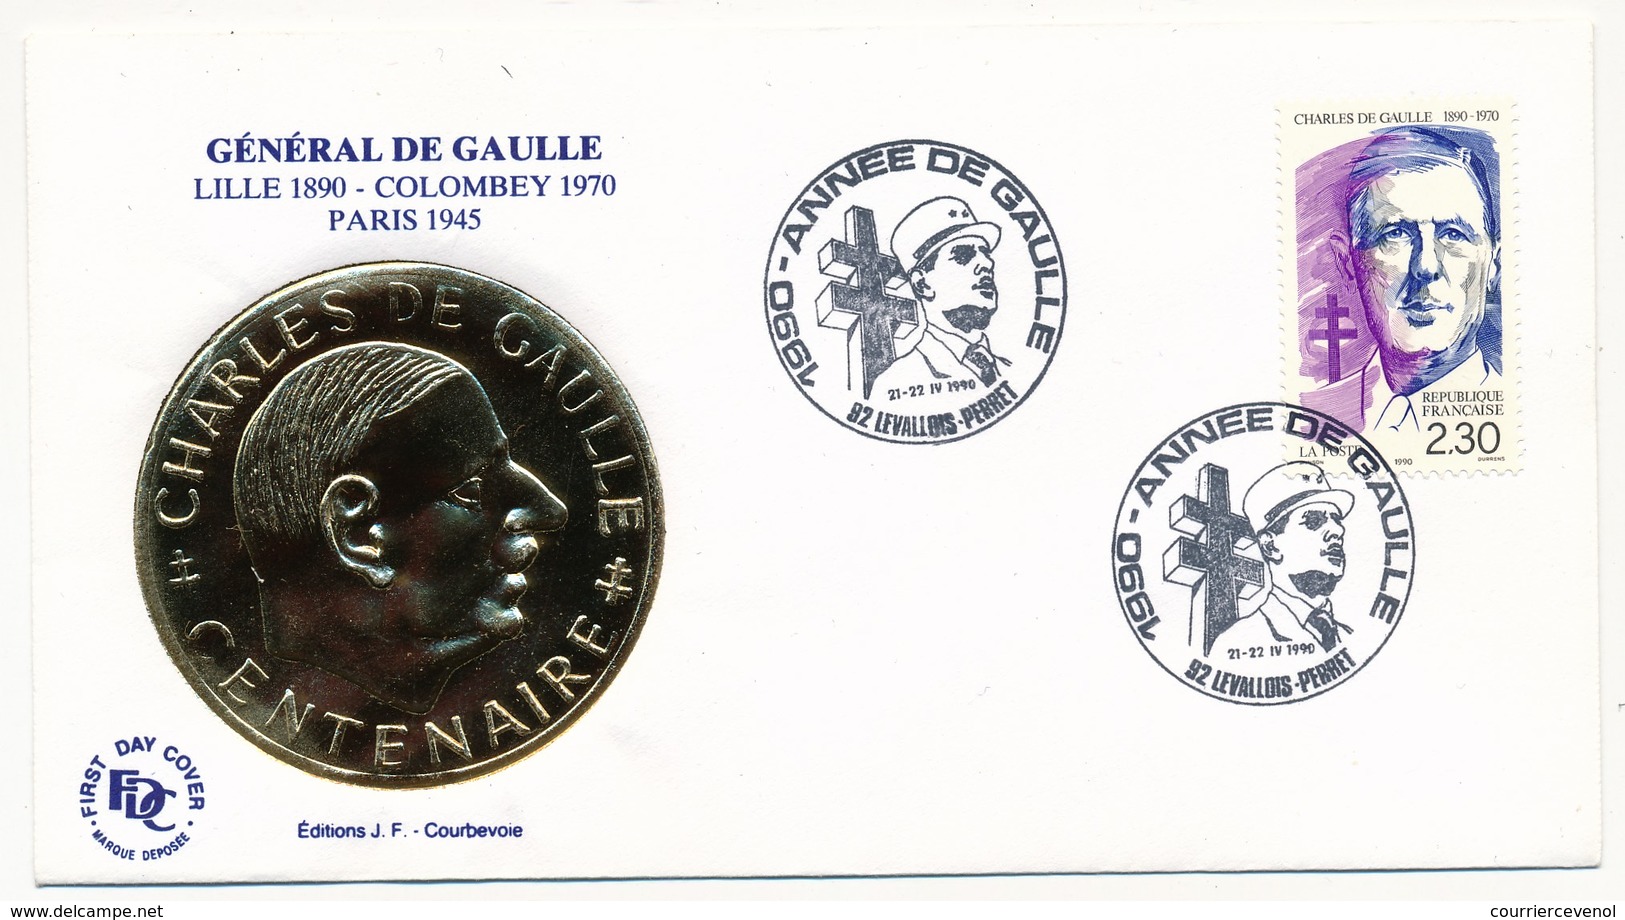 FRANCE - Enveloppe - Cachet Temporaire "1990 Année De Gaulle" - Levallois Perret  - 21/22.4.1990 - De Gaulle (Generale)